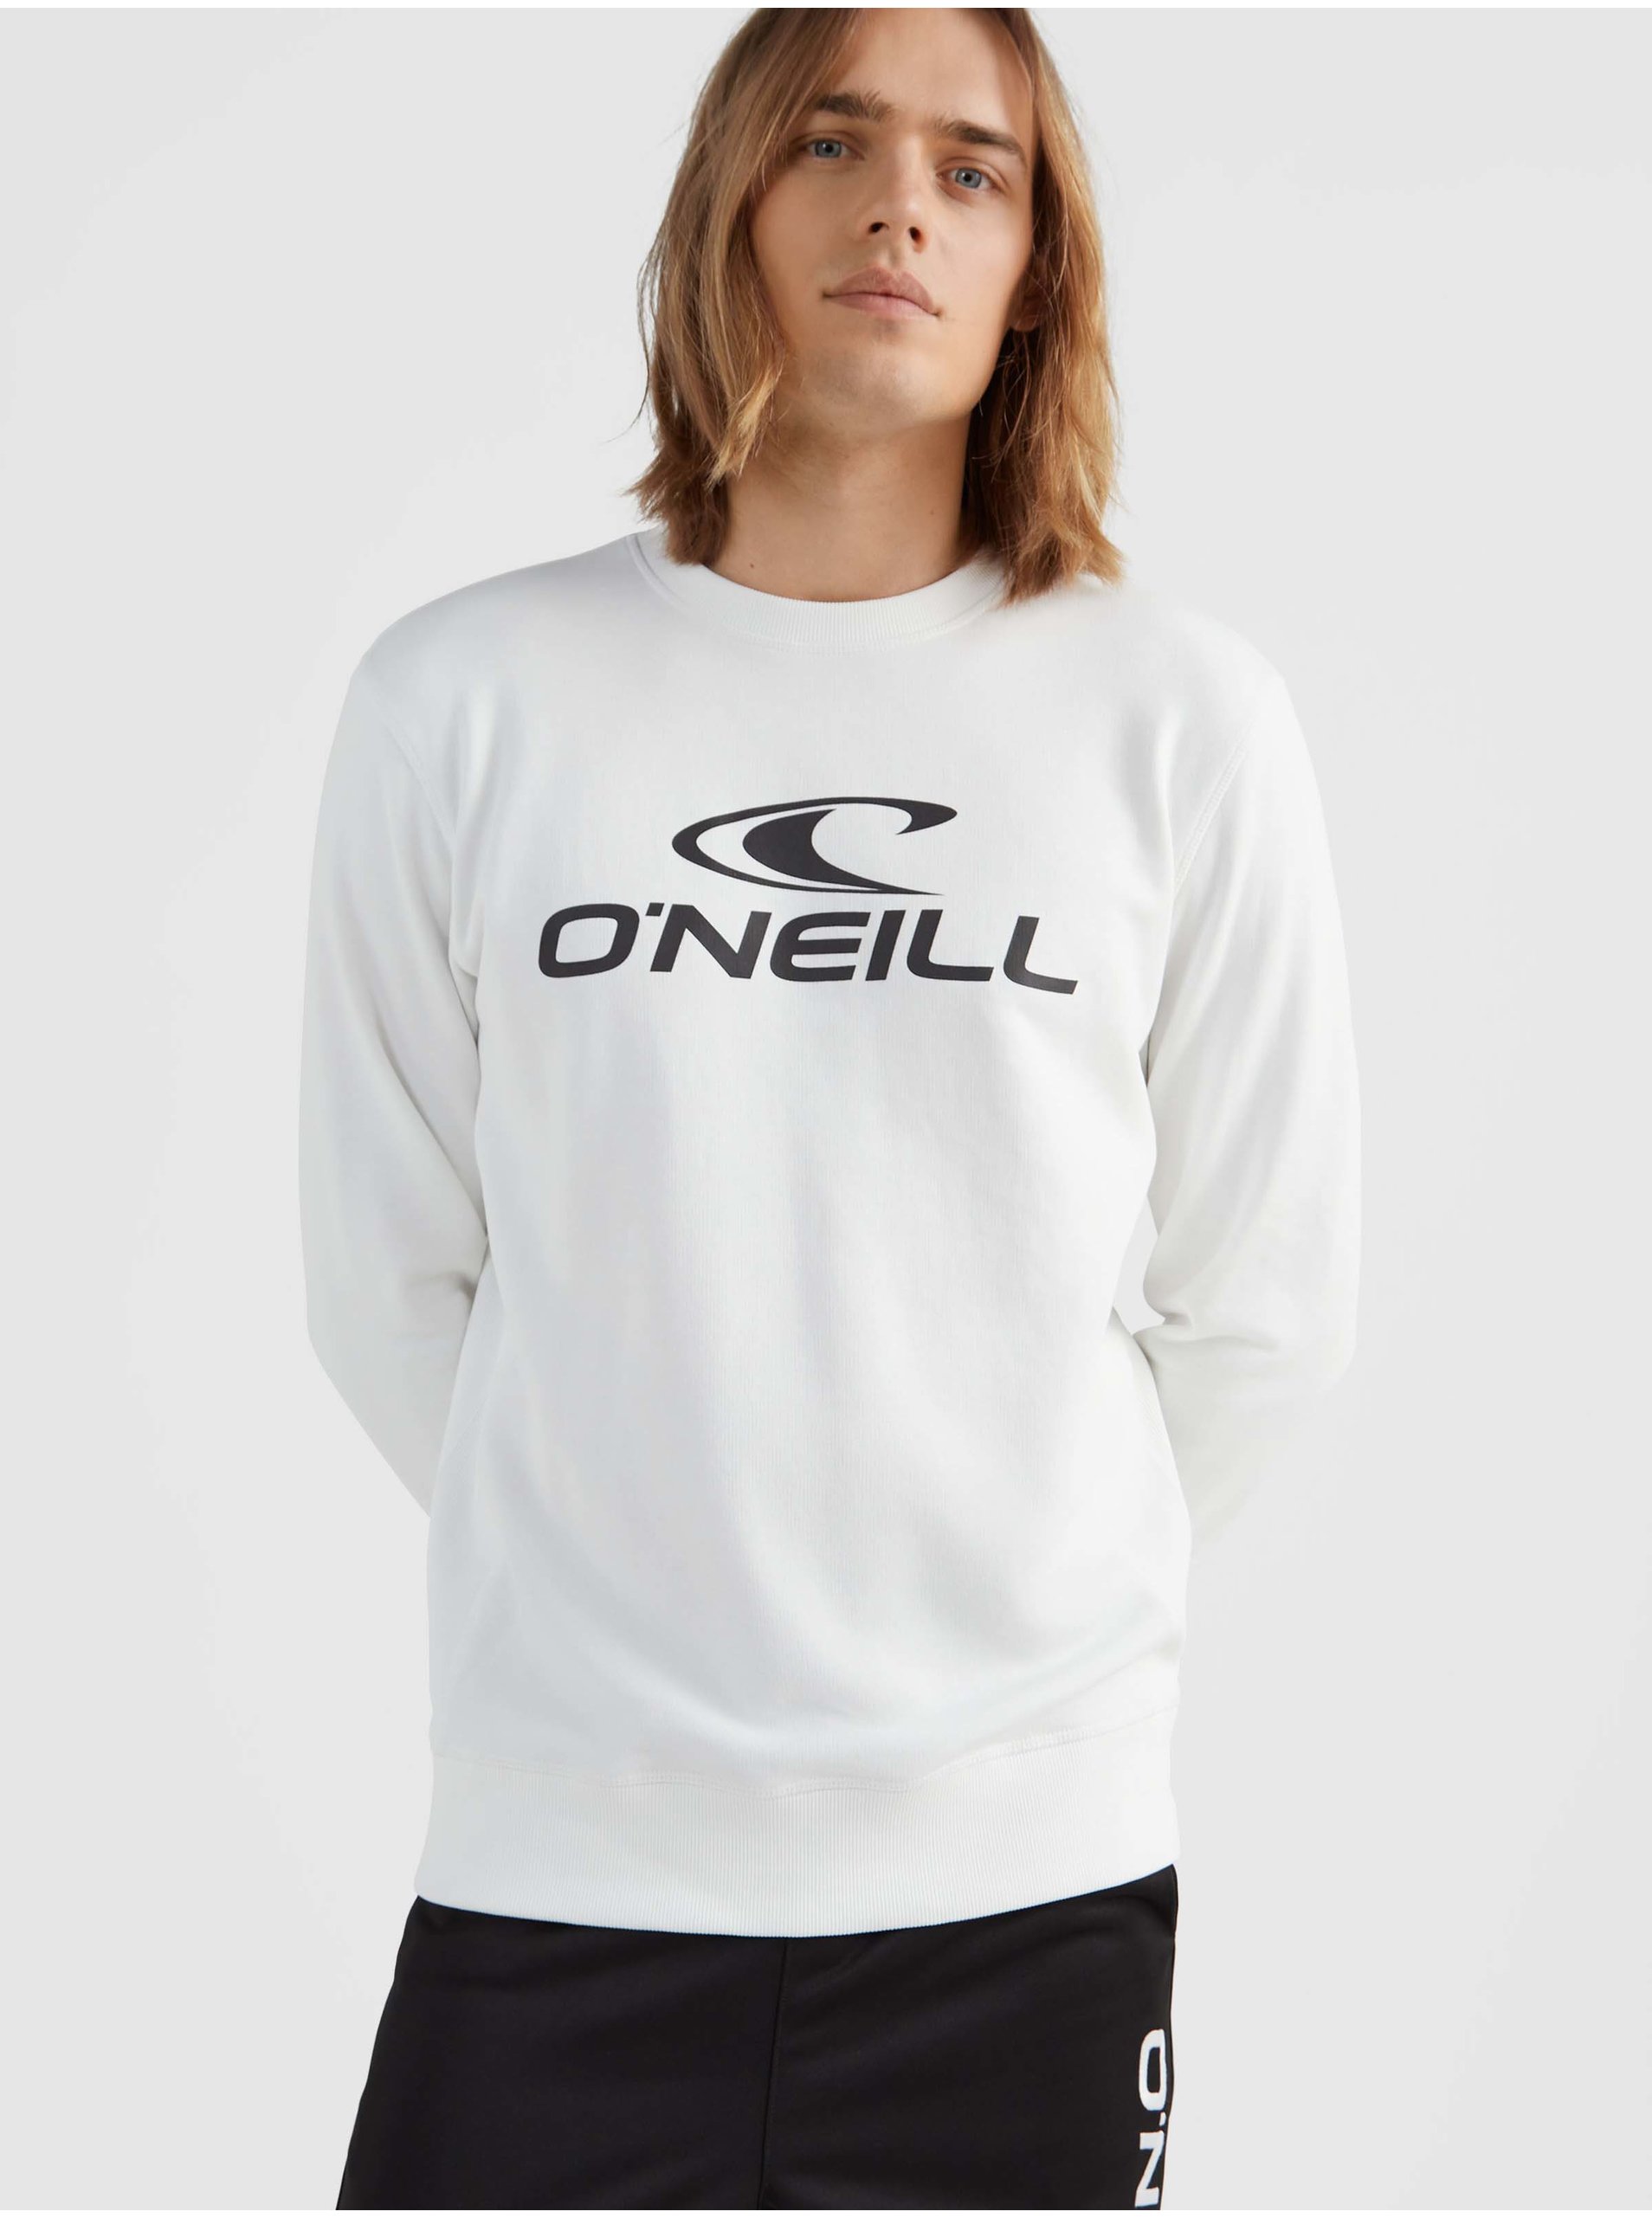 ONeill Mens Sweatshirt White Lined O'Neill - Men